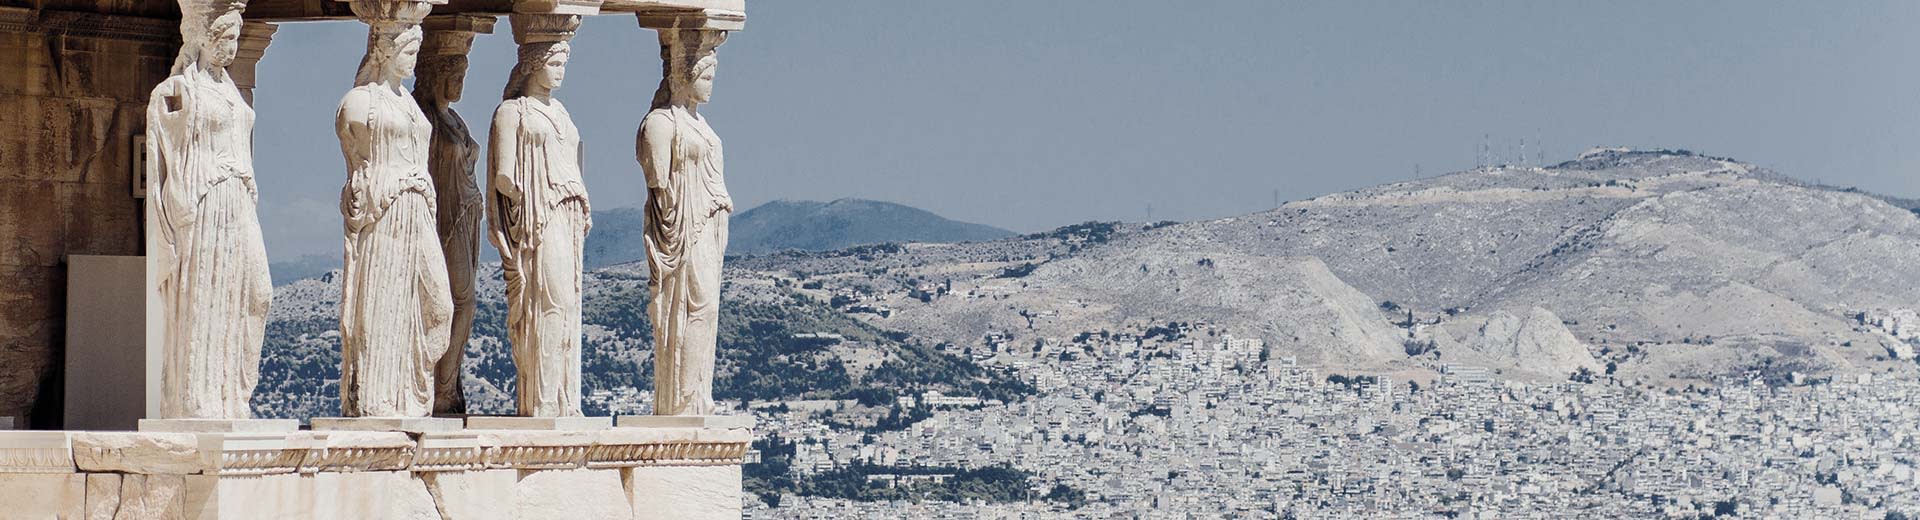 アテネのエレクティオンのカリアティッドと背景の山々。